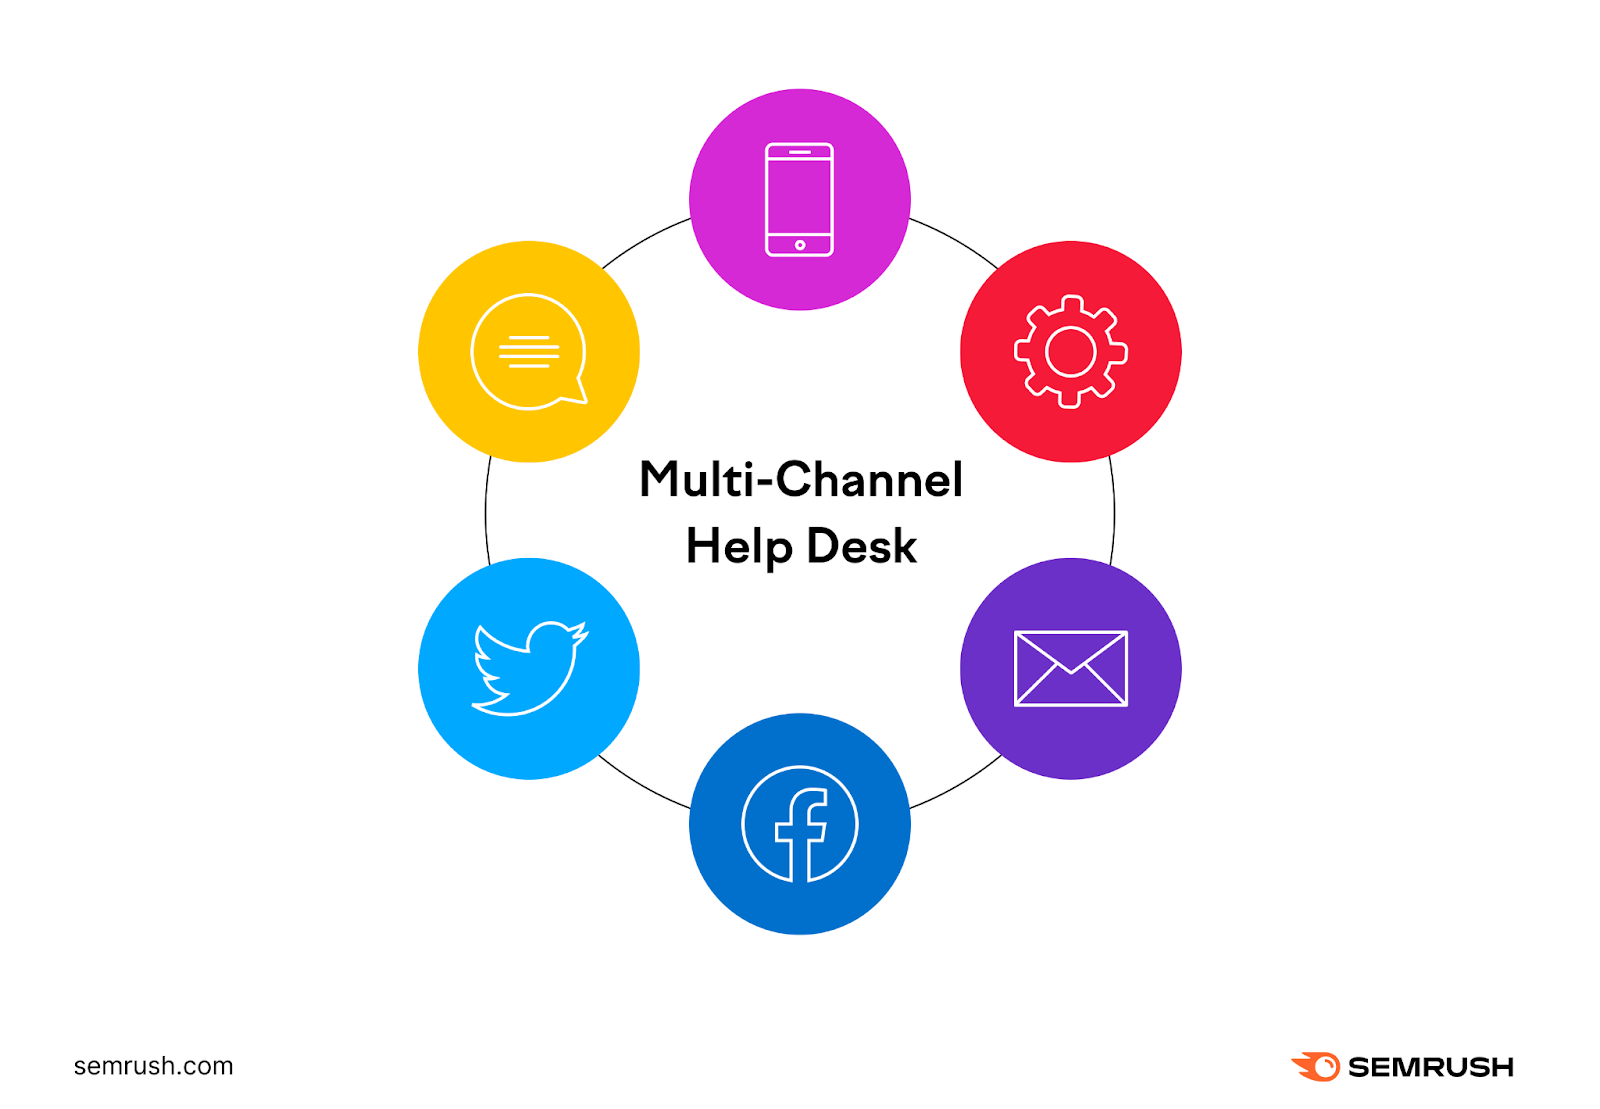 Multi-Channel Help Desk